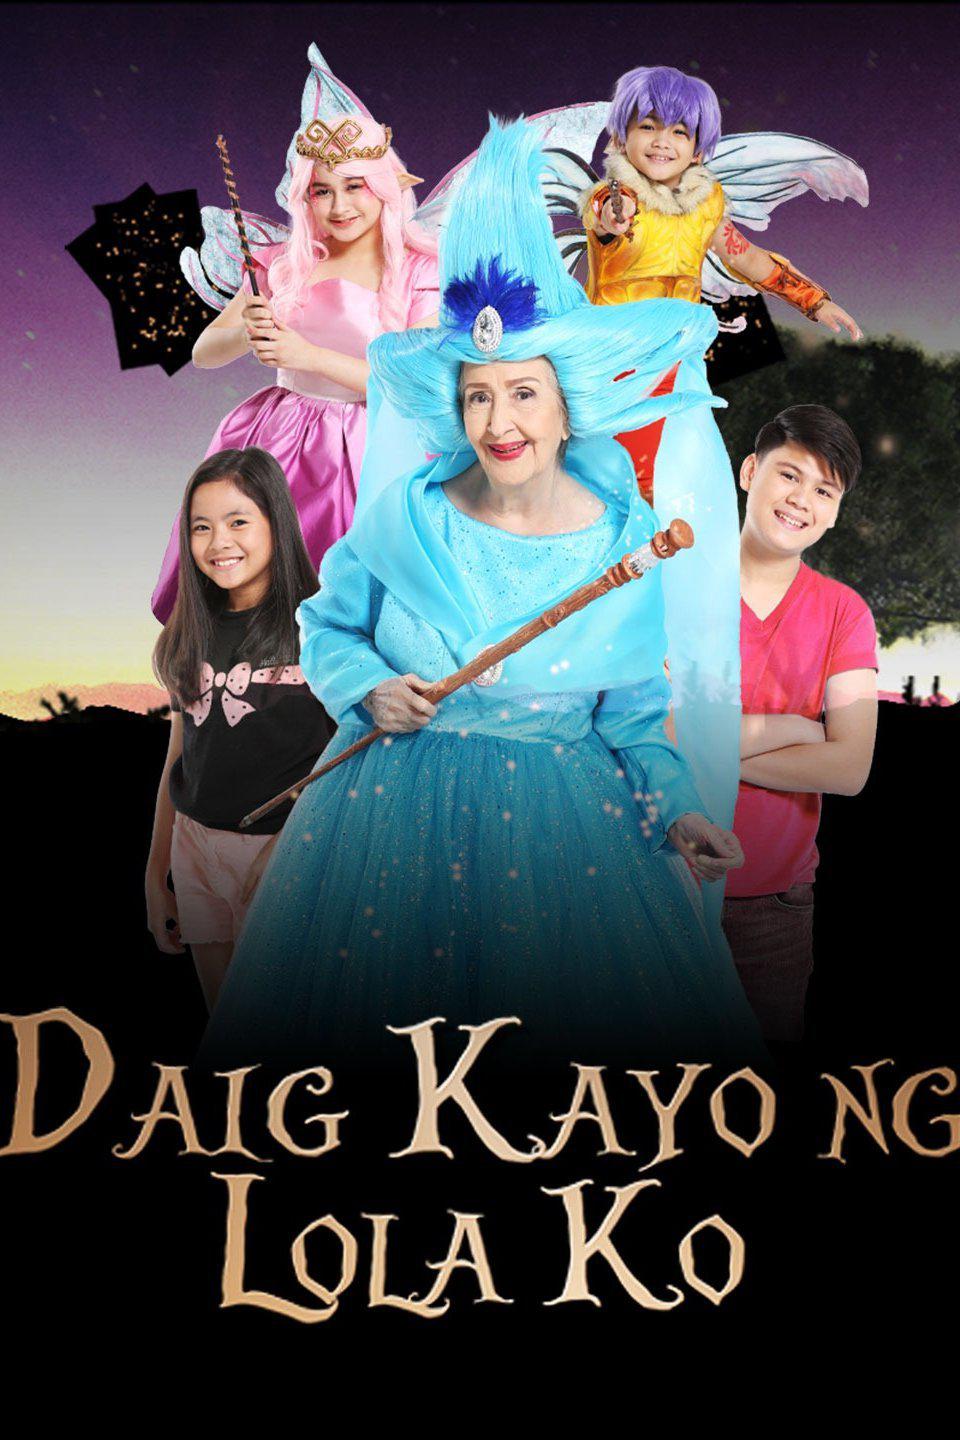 TV ratings for Daig Kayo Ng Lola Ko in Portugal. GMA TV series